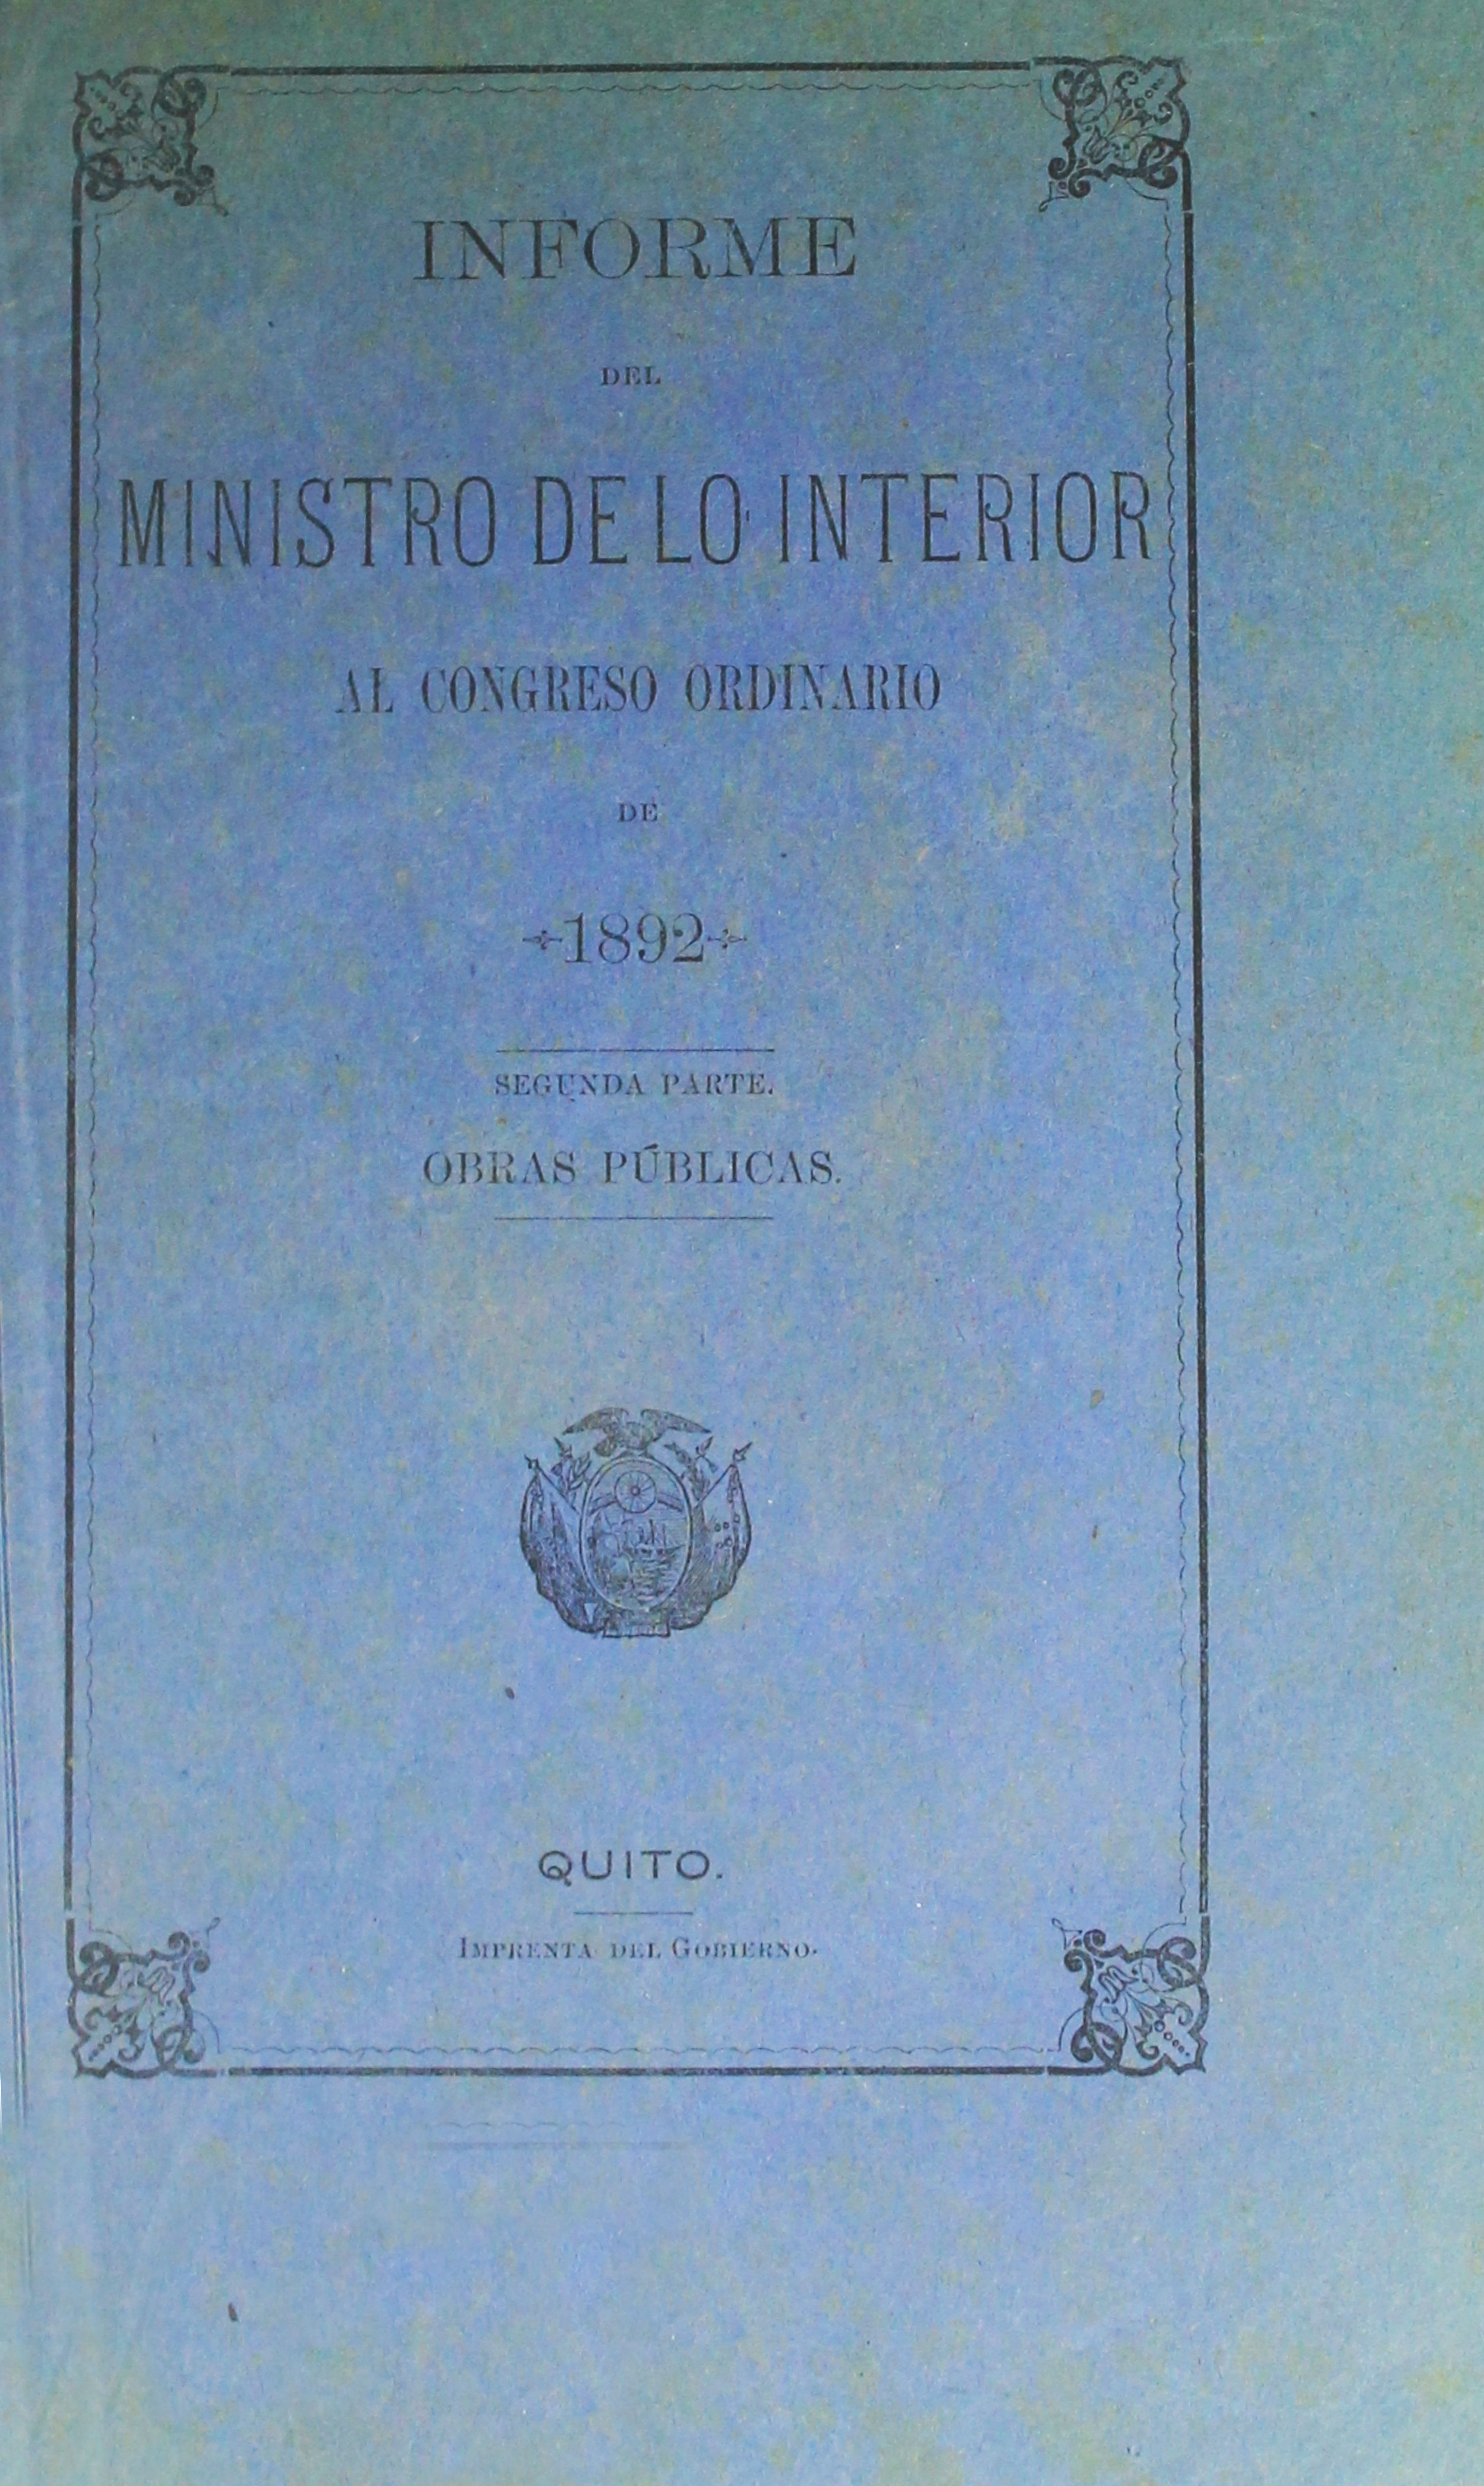 Informe del Ministro de lo Interior al Congreso Ordinario de 1892 : Segunda parte : Obras Públicas